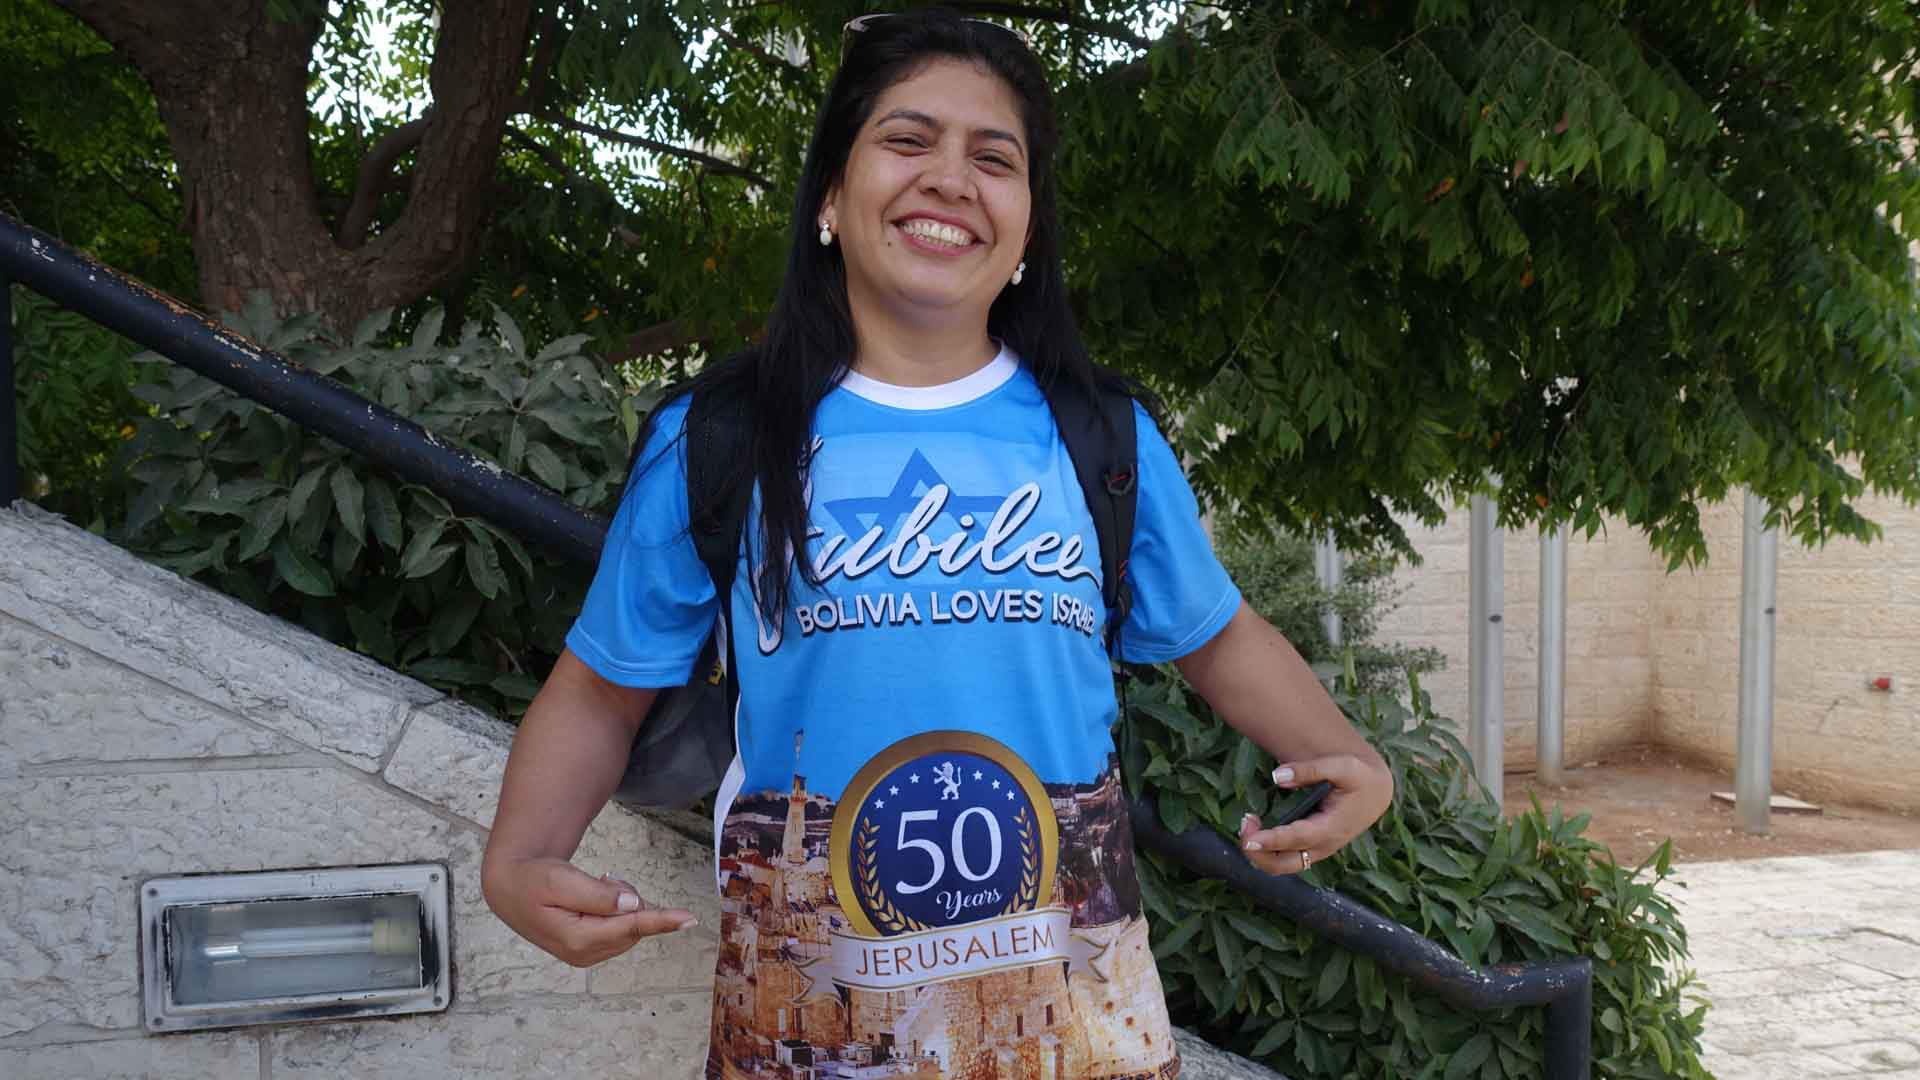 200 Bolivianer kamen dieses Jahr zum Laubhüttenfest nach Jerusalem – darunter auch Erika Parada